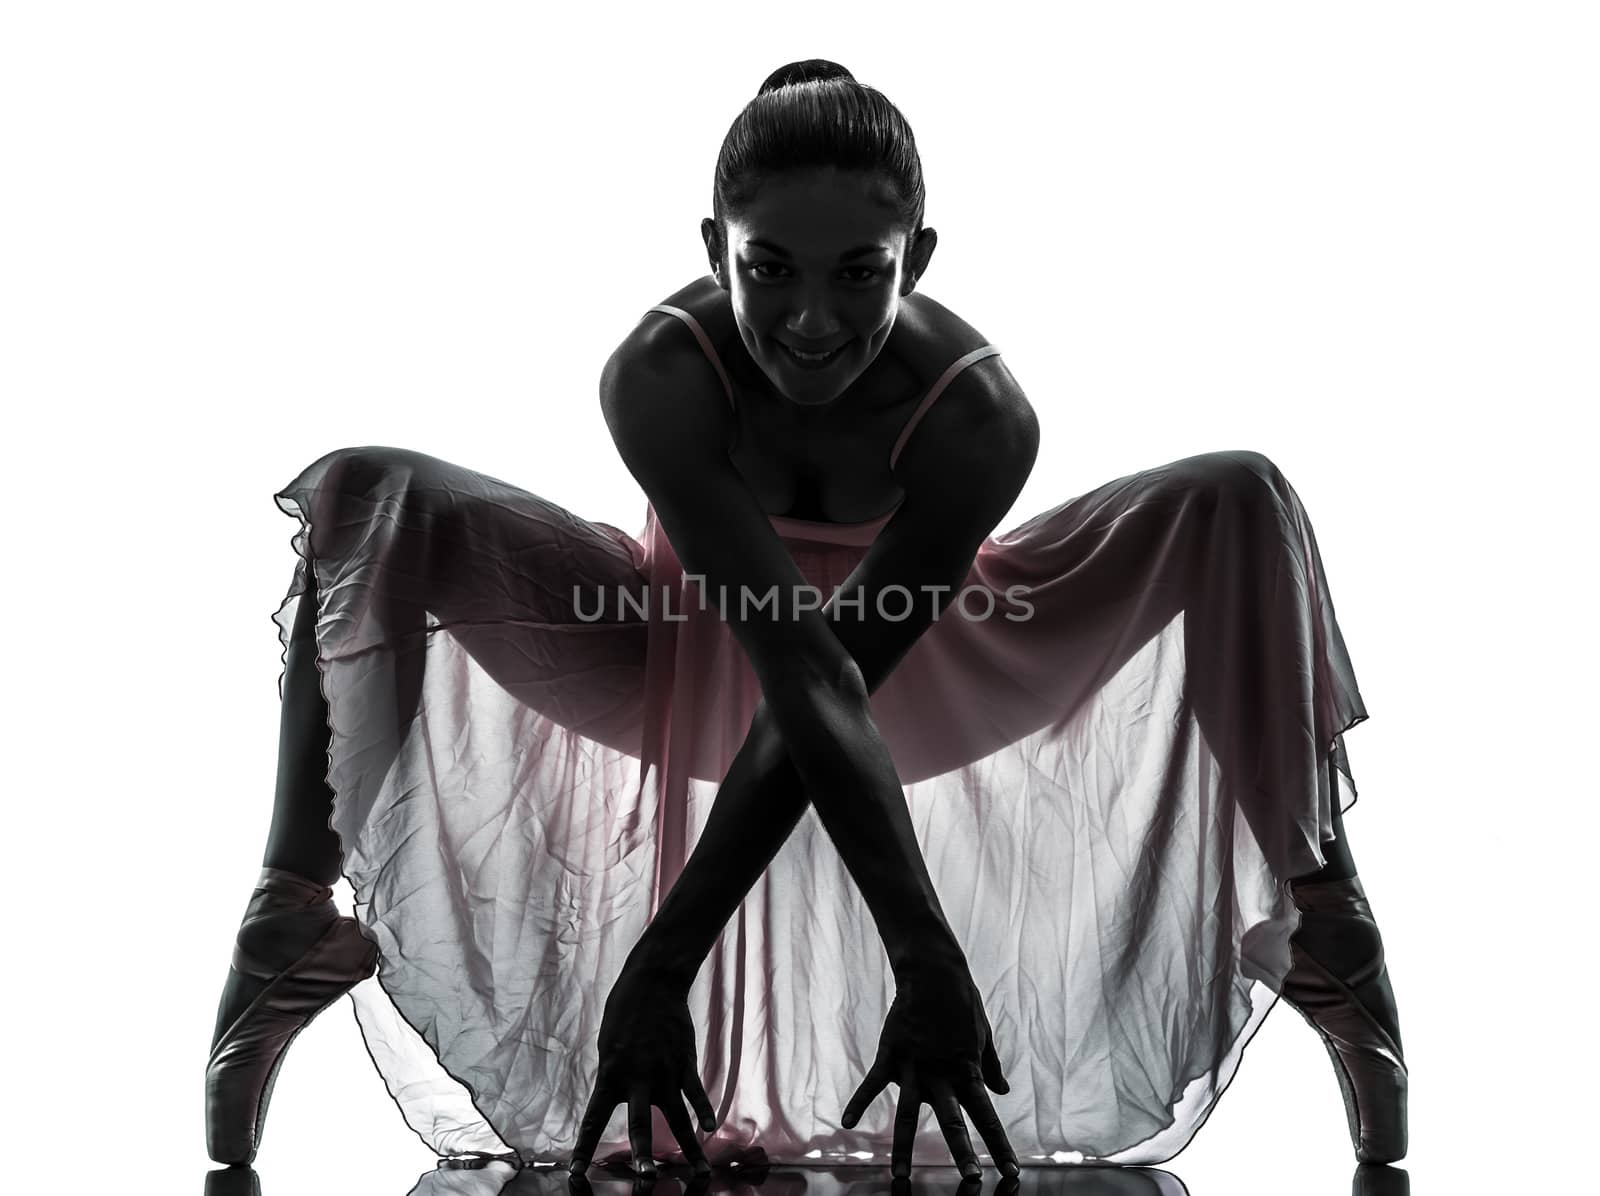 woman  ballerina ballet dancer dancing silhouette by PIXSTILL